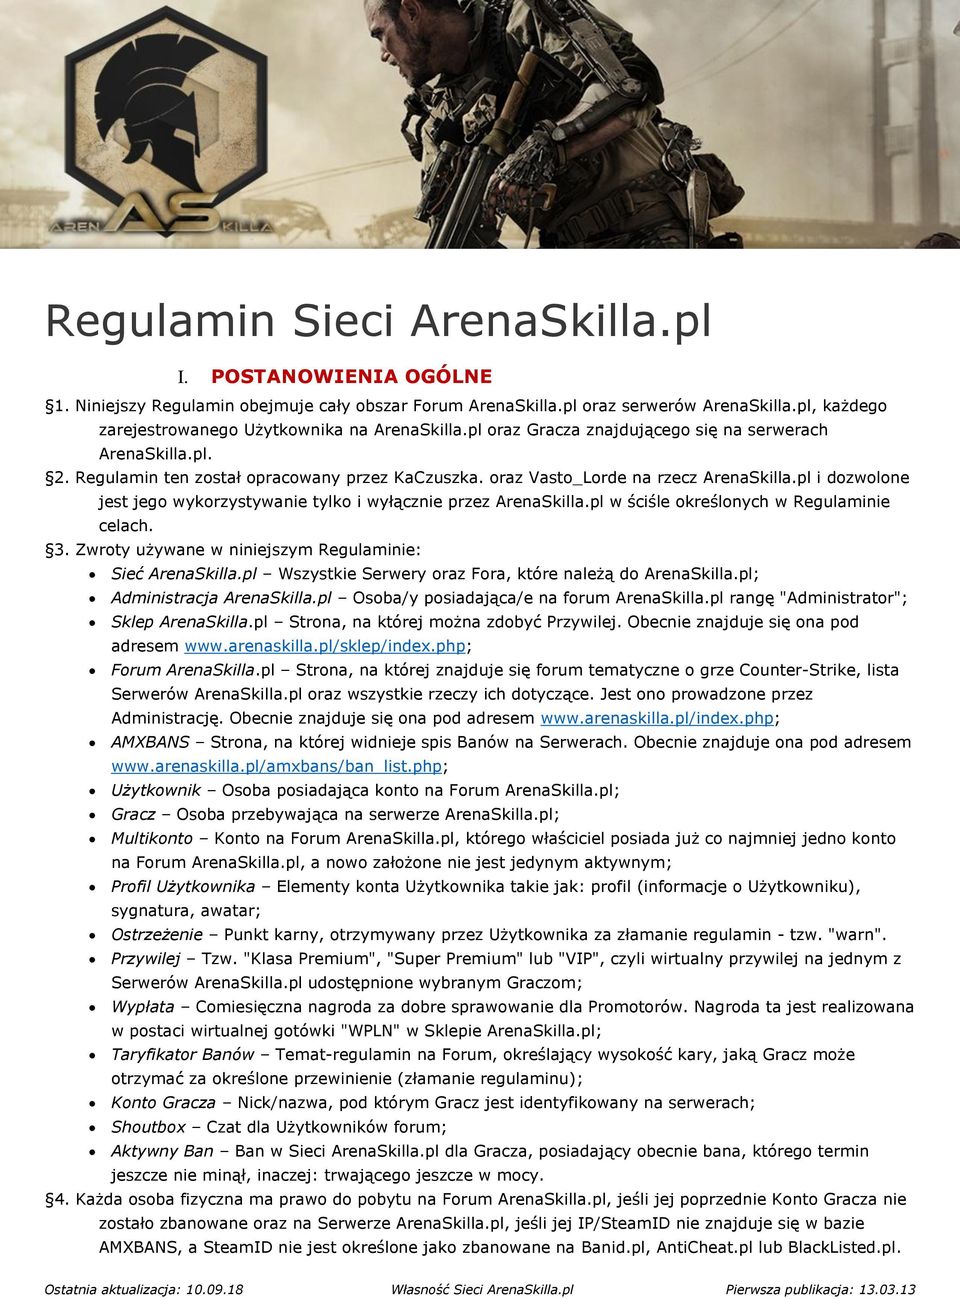 oraz Vasto_Lorde na rzecz ArenaSkilla.pl i dozwolone jest jego wykorzystywanie tylko i wyłącznie przez ArenaSkilla.pl w ściśle określonych w Regulaminie celach. 3.